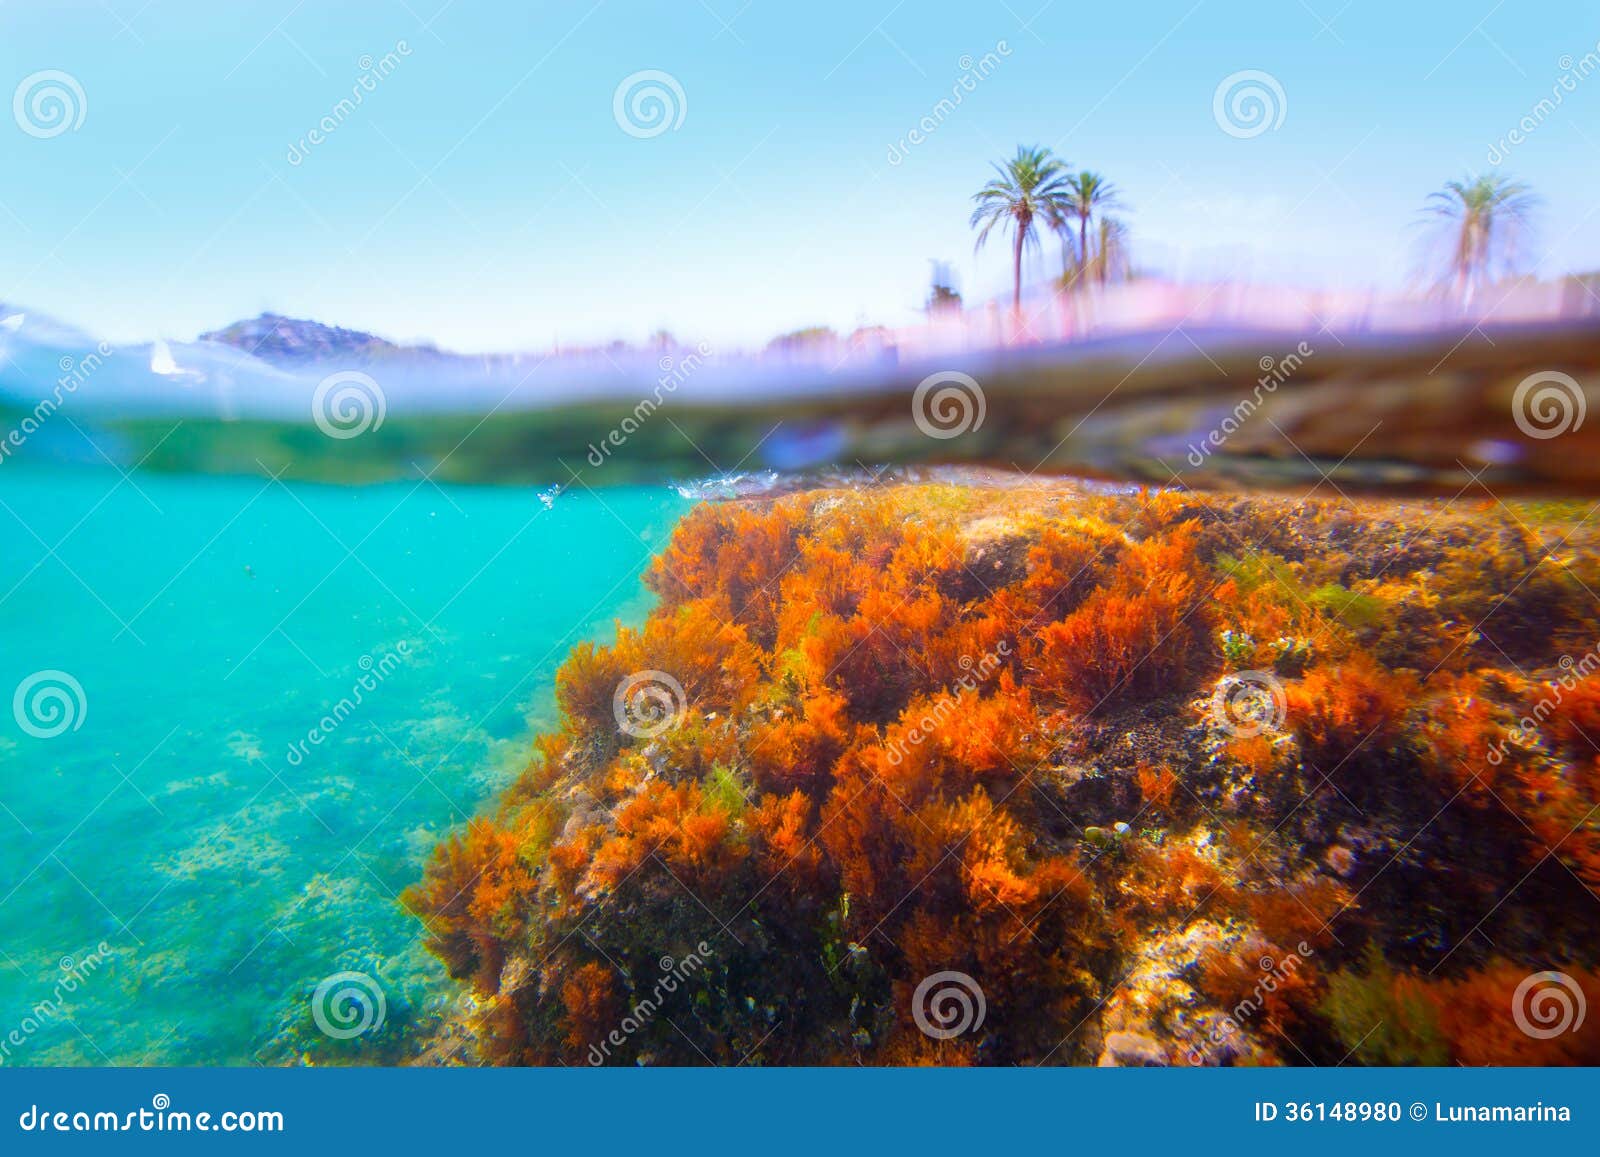 mediterranean underwater seaweed denia alicante spain